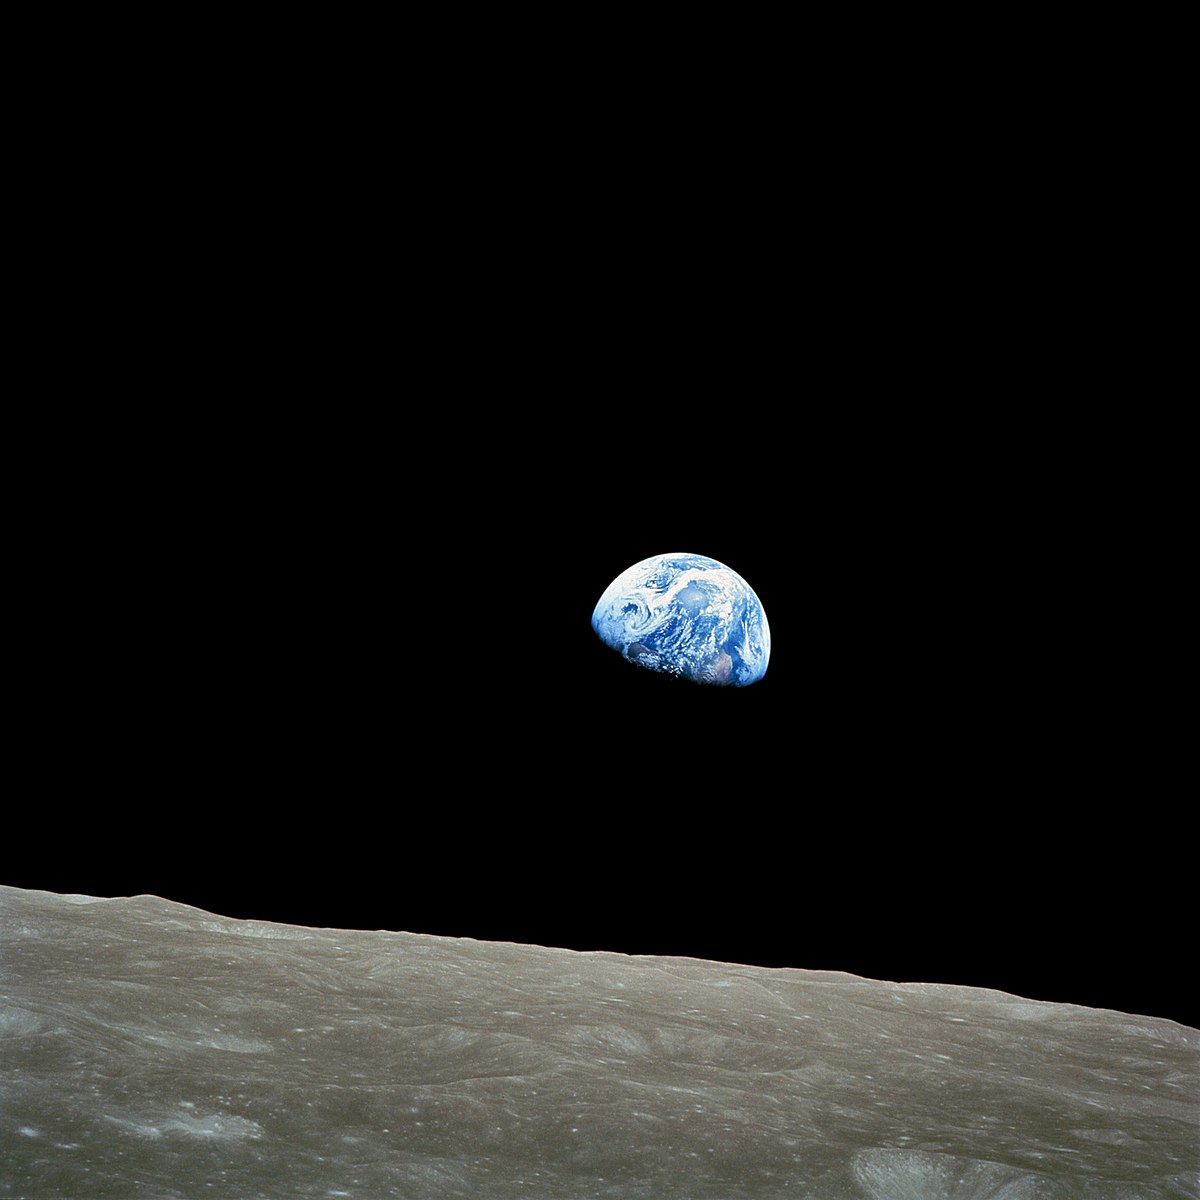 Earthrise, la primera foto de la Tierra desde la Luna.